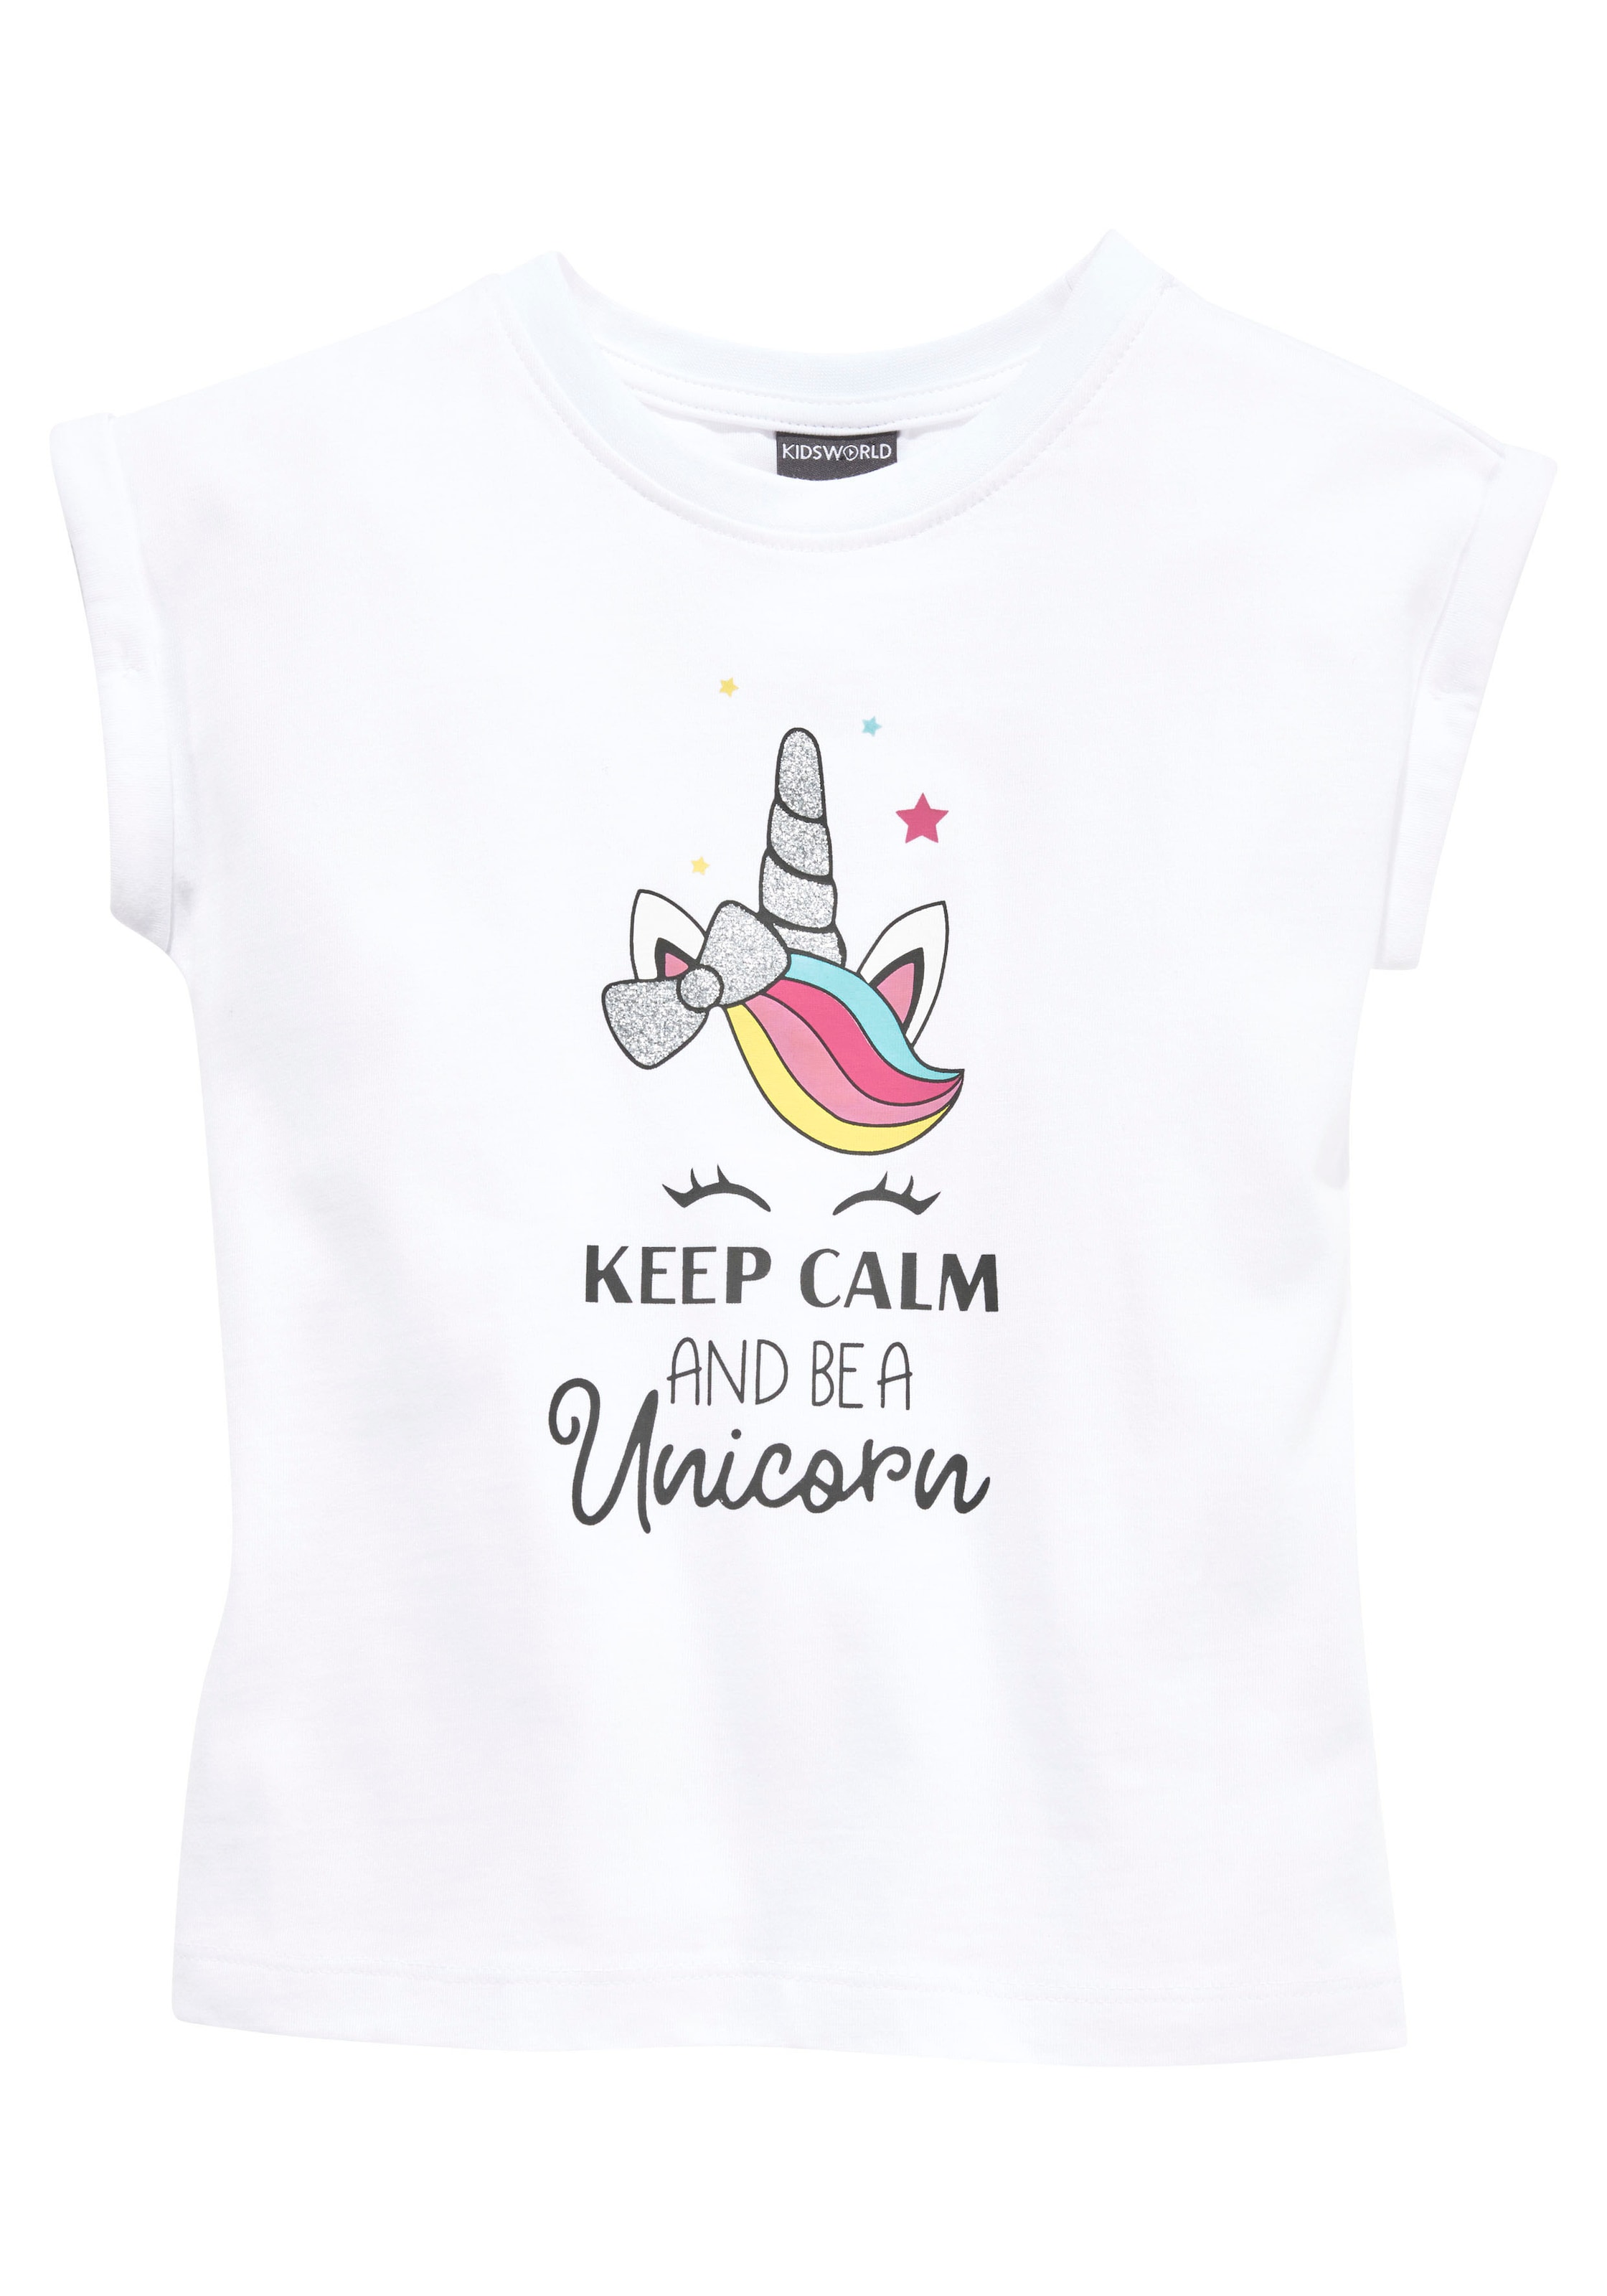 Einhornmotiv a mit KIDSWORLD »keep T-Shirt be and niedlichem calm bei ♕ unicorn«,